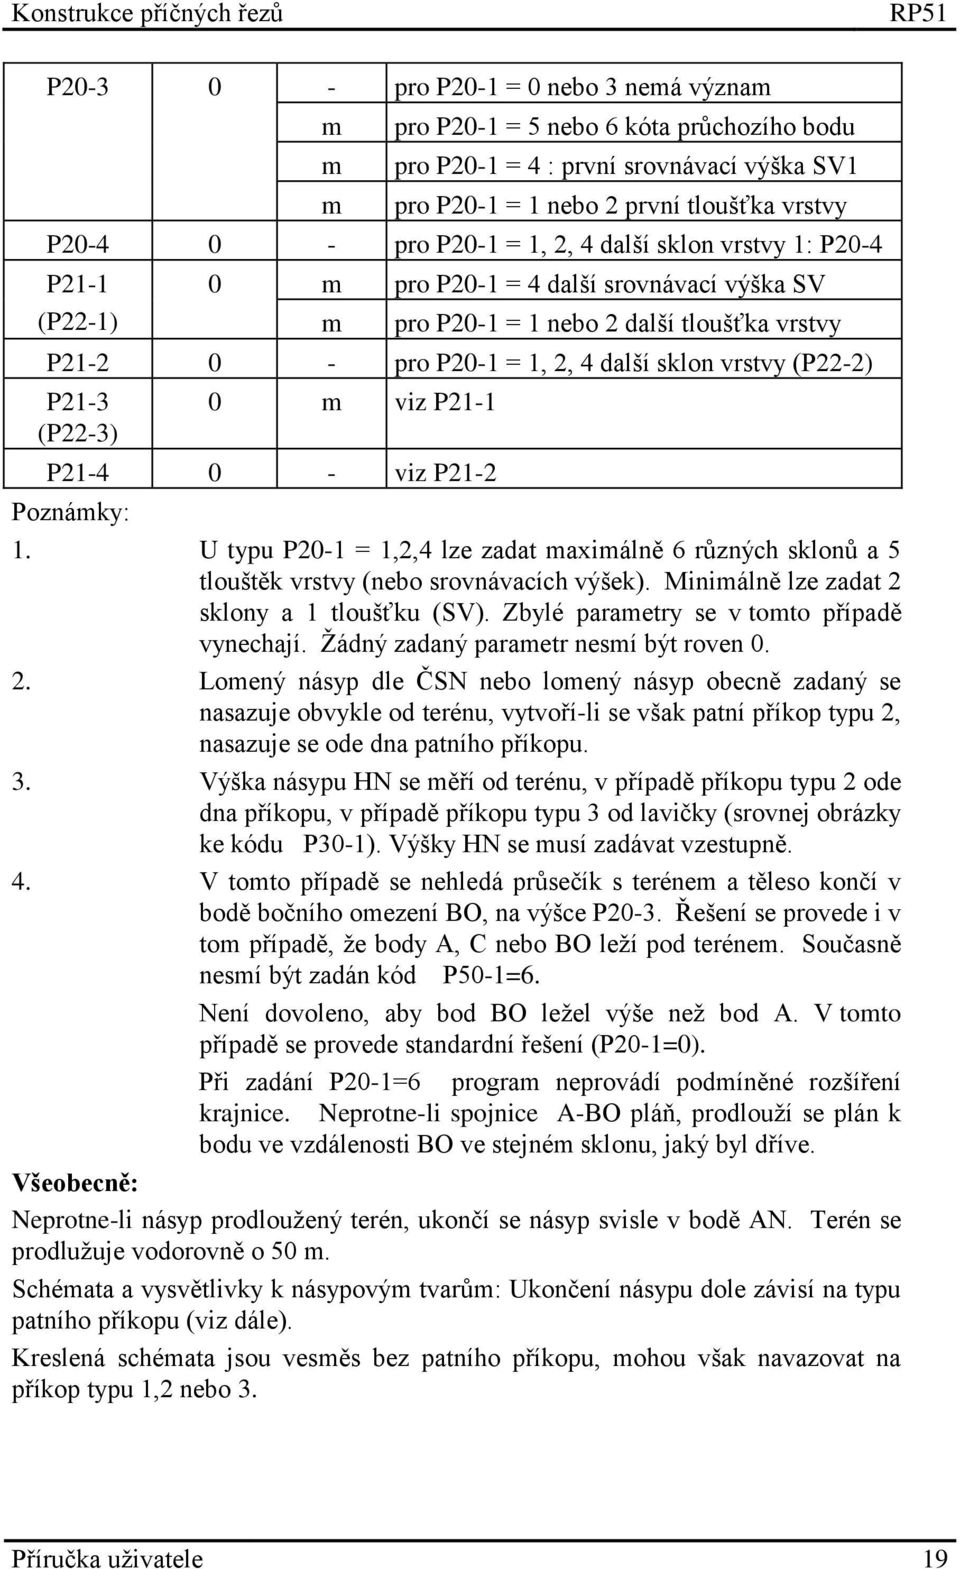 (P22-2) P21-3 (P22-3) 0 m viz P21-1 P21-4 0 - viz P21-2 Poznámky: 1. U typu P20-1 = 1,2,4 lze zadat maximálně 6 různých sklonů a 5 tlouštěk vrstvy (nebo srovnávacích výšek).